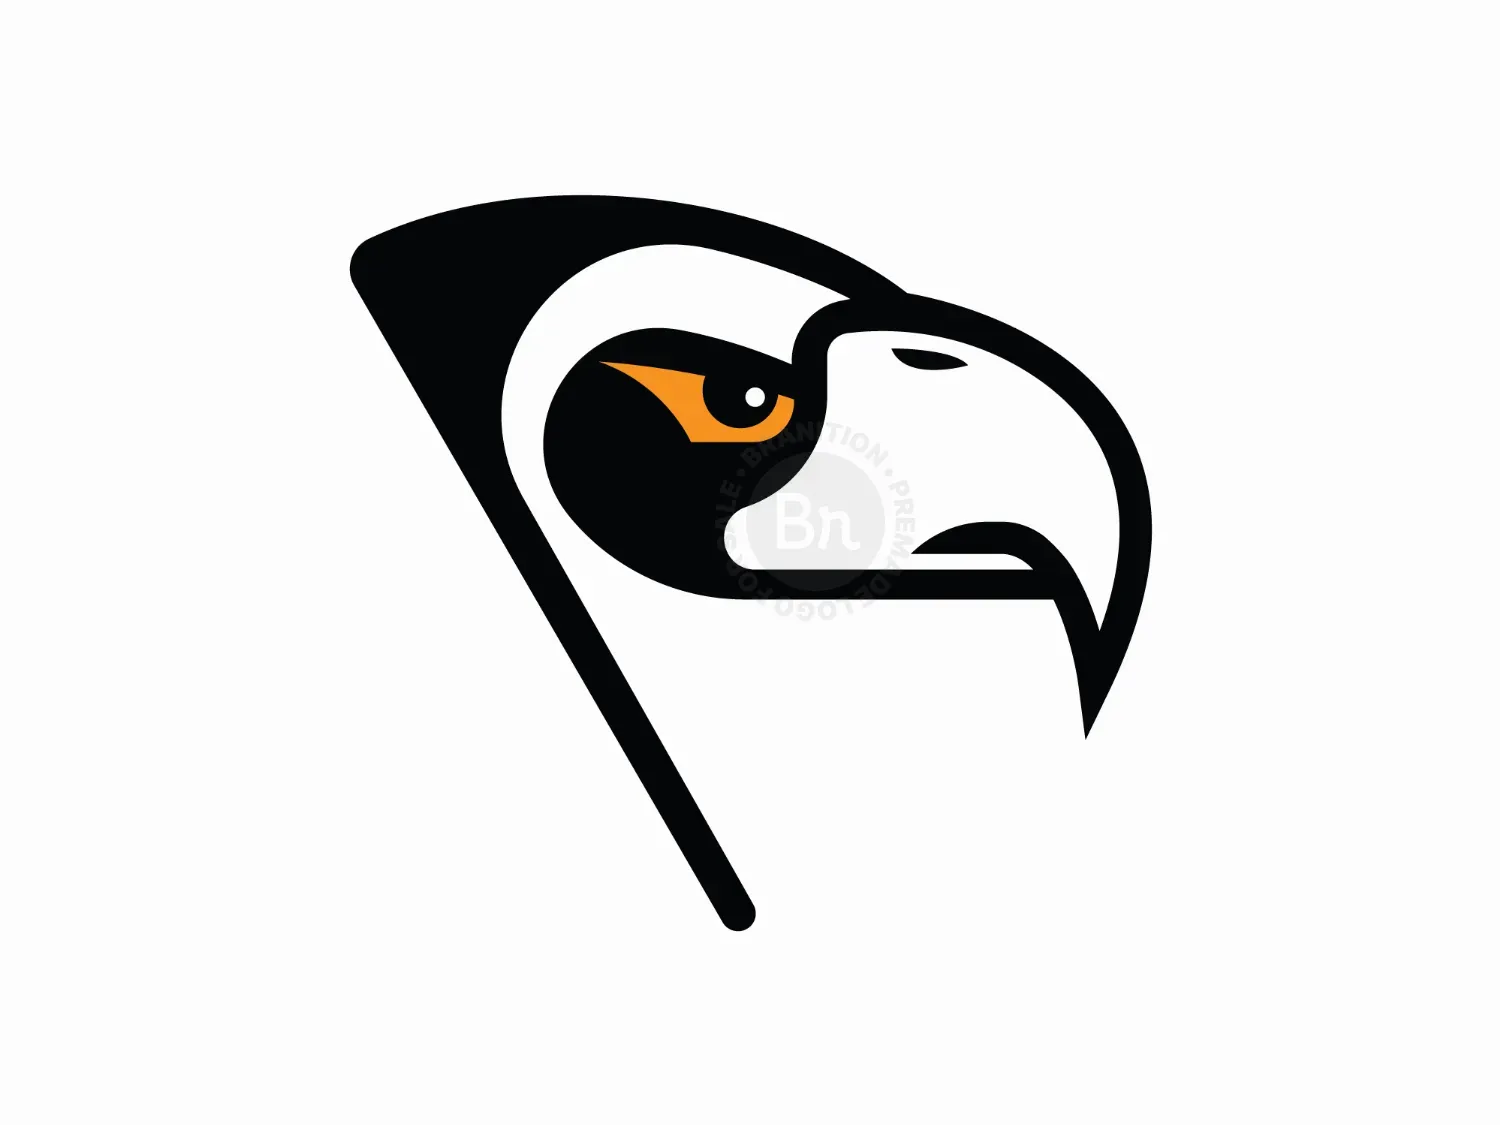 Eagle Flag Logo